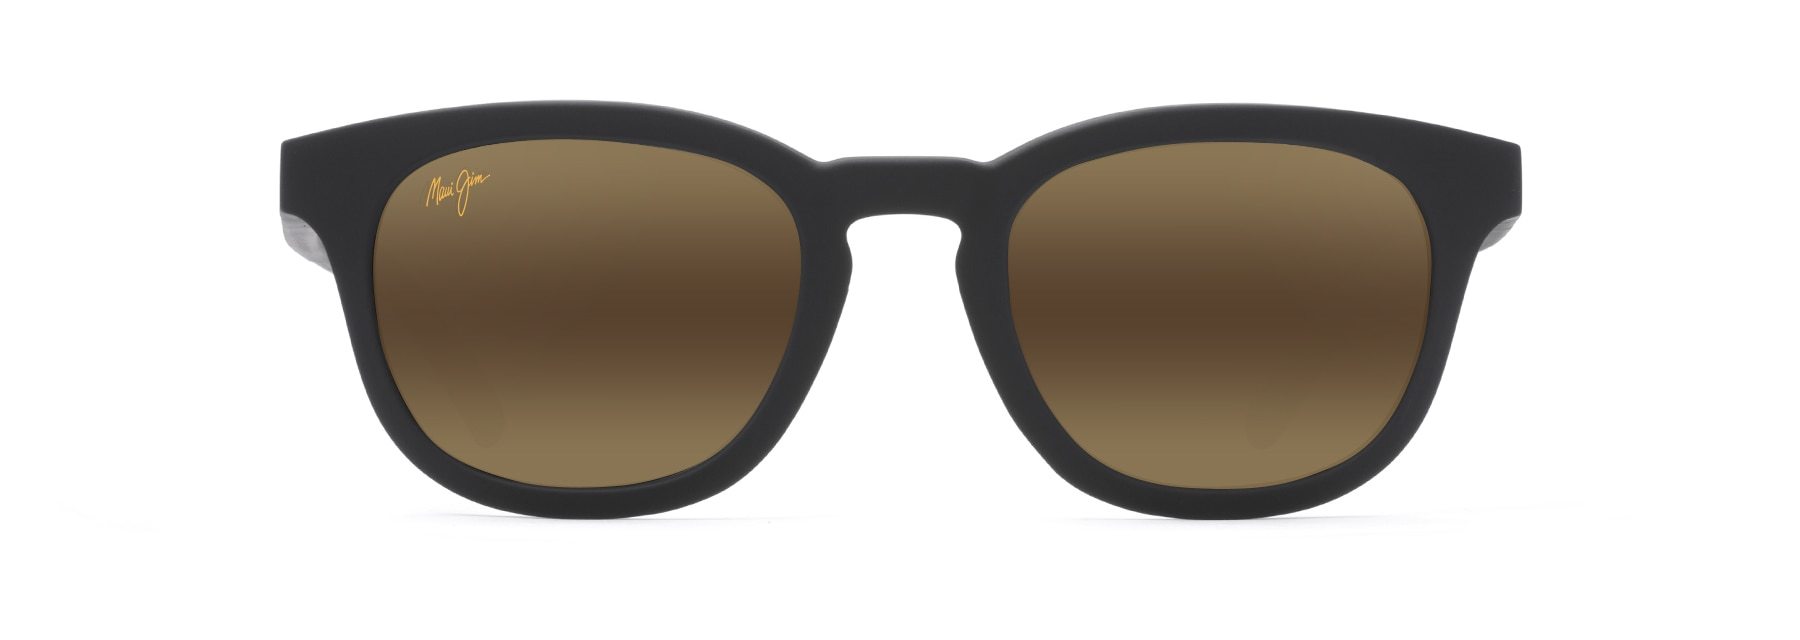 MyMaui Koko Head MM737-002 Sunglasses